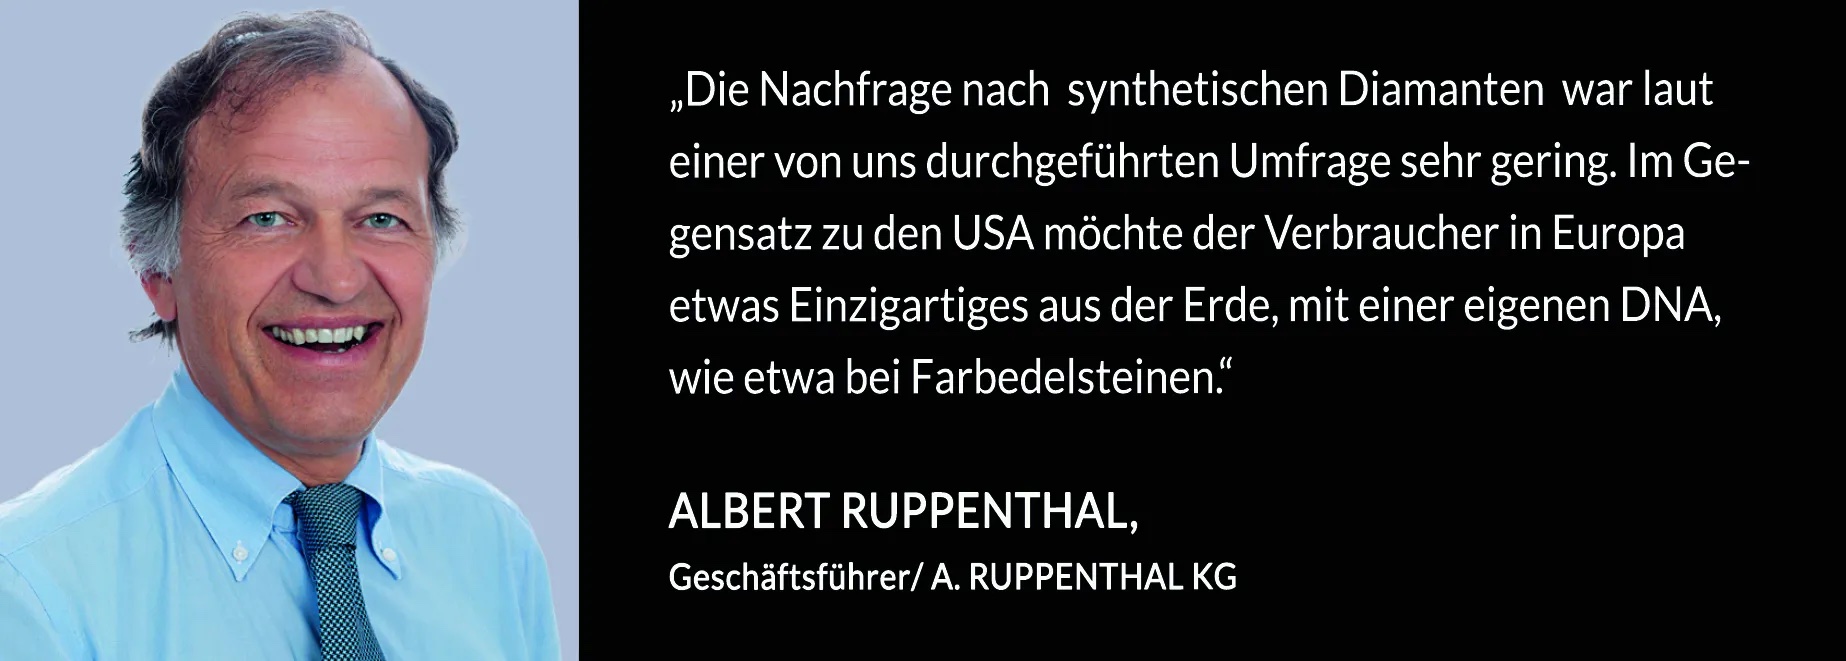 Albert_Ruppenthal_Zitat